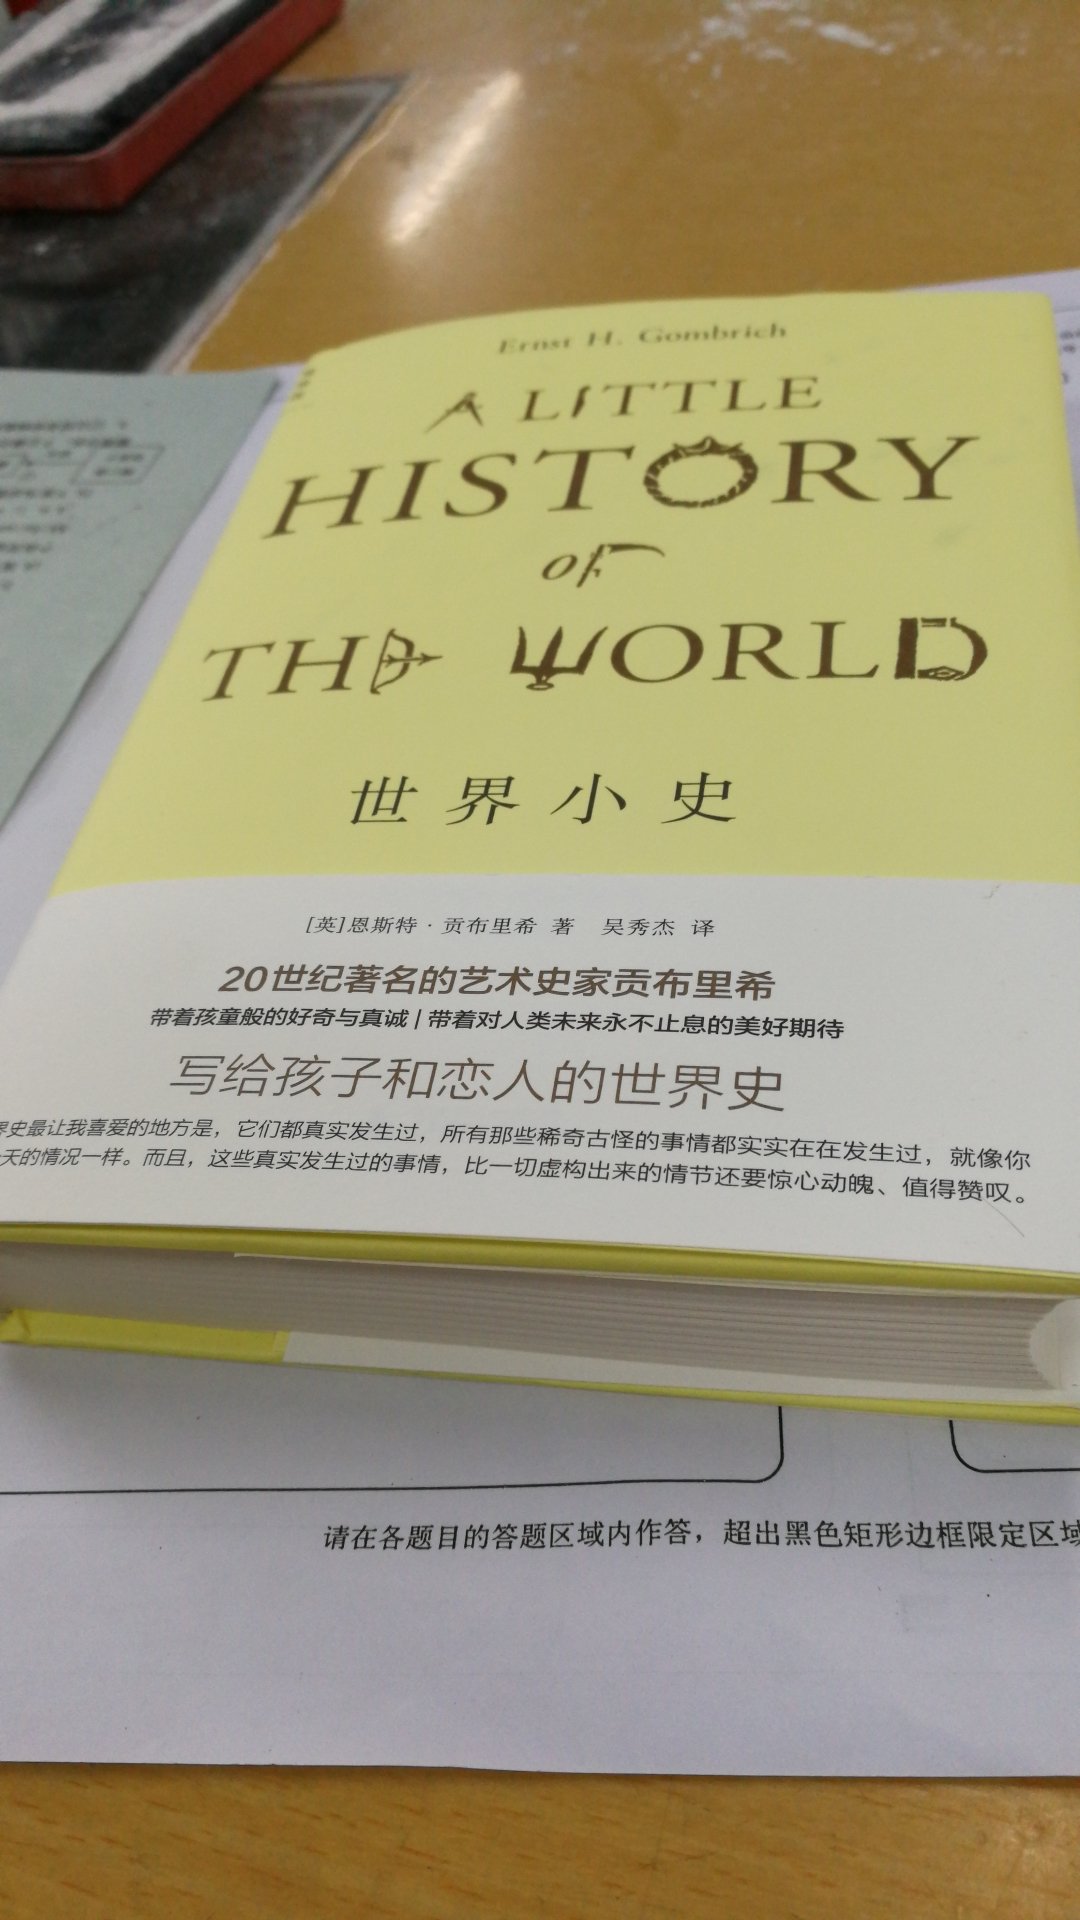 很有趣的一本历史书。